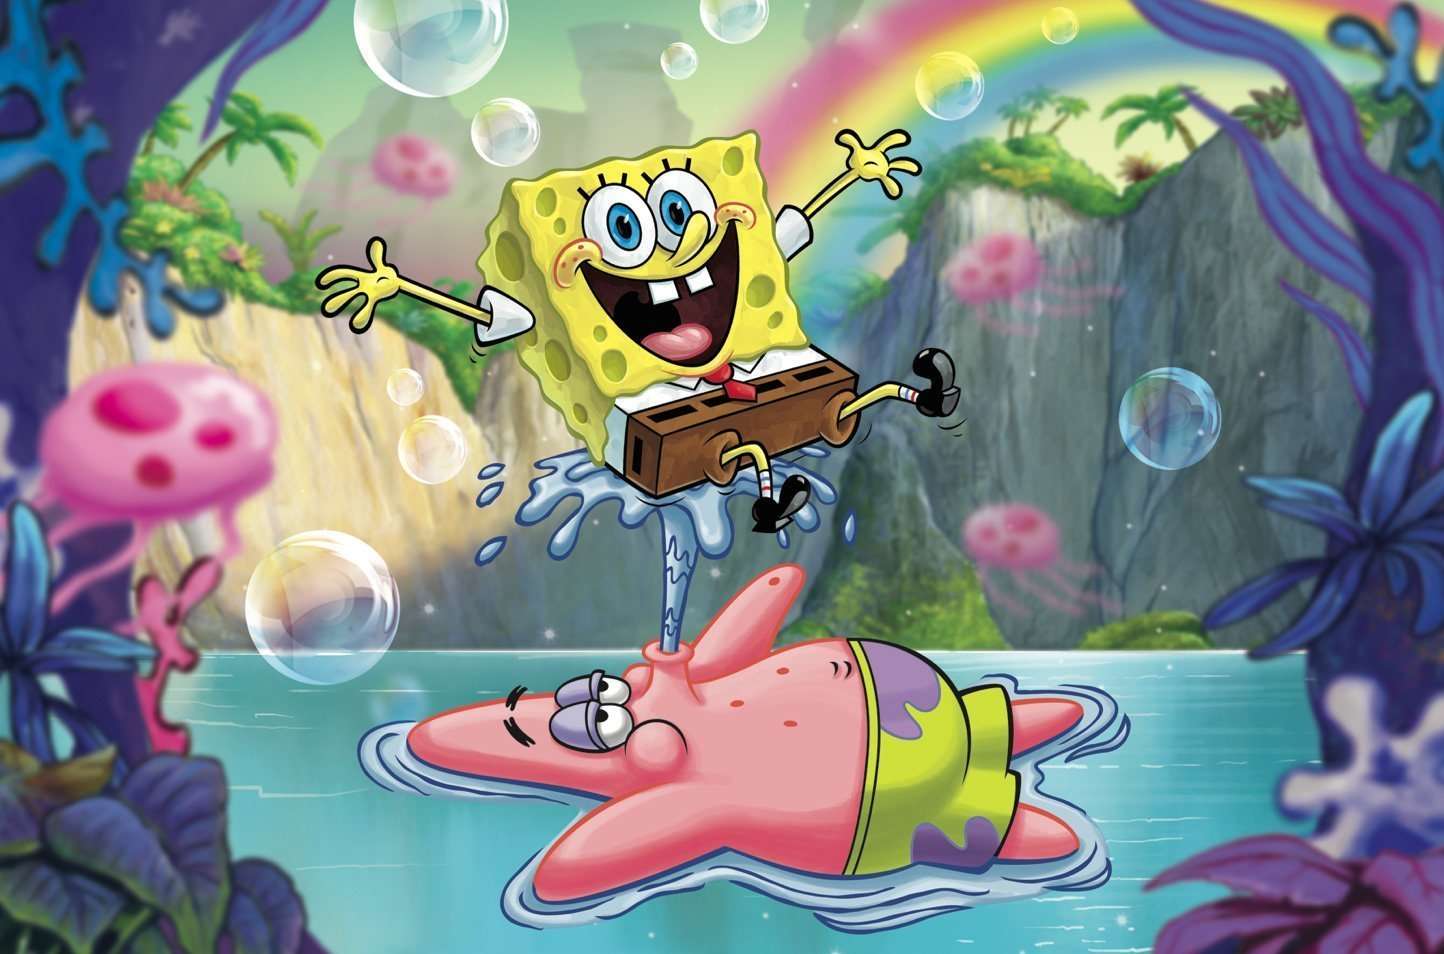 Spongebob online puzzle